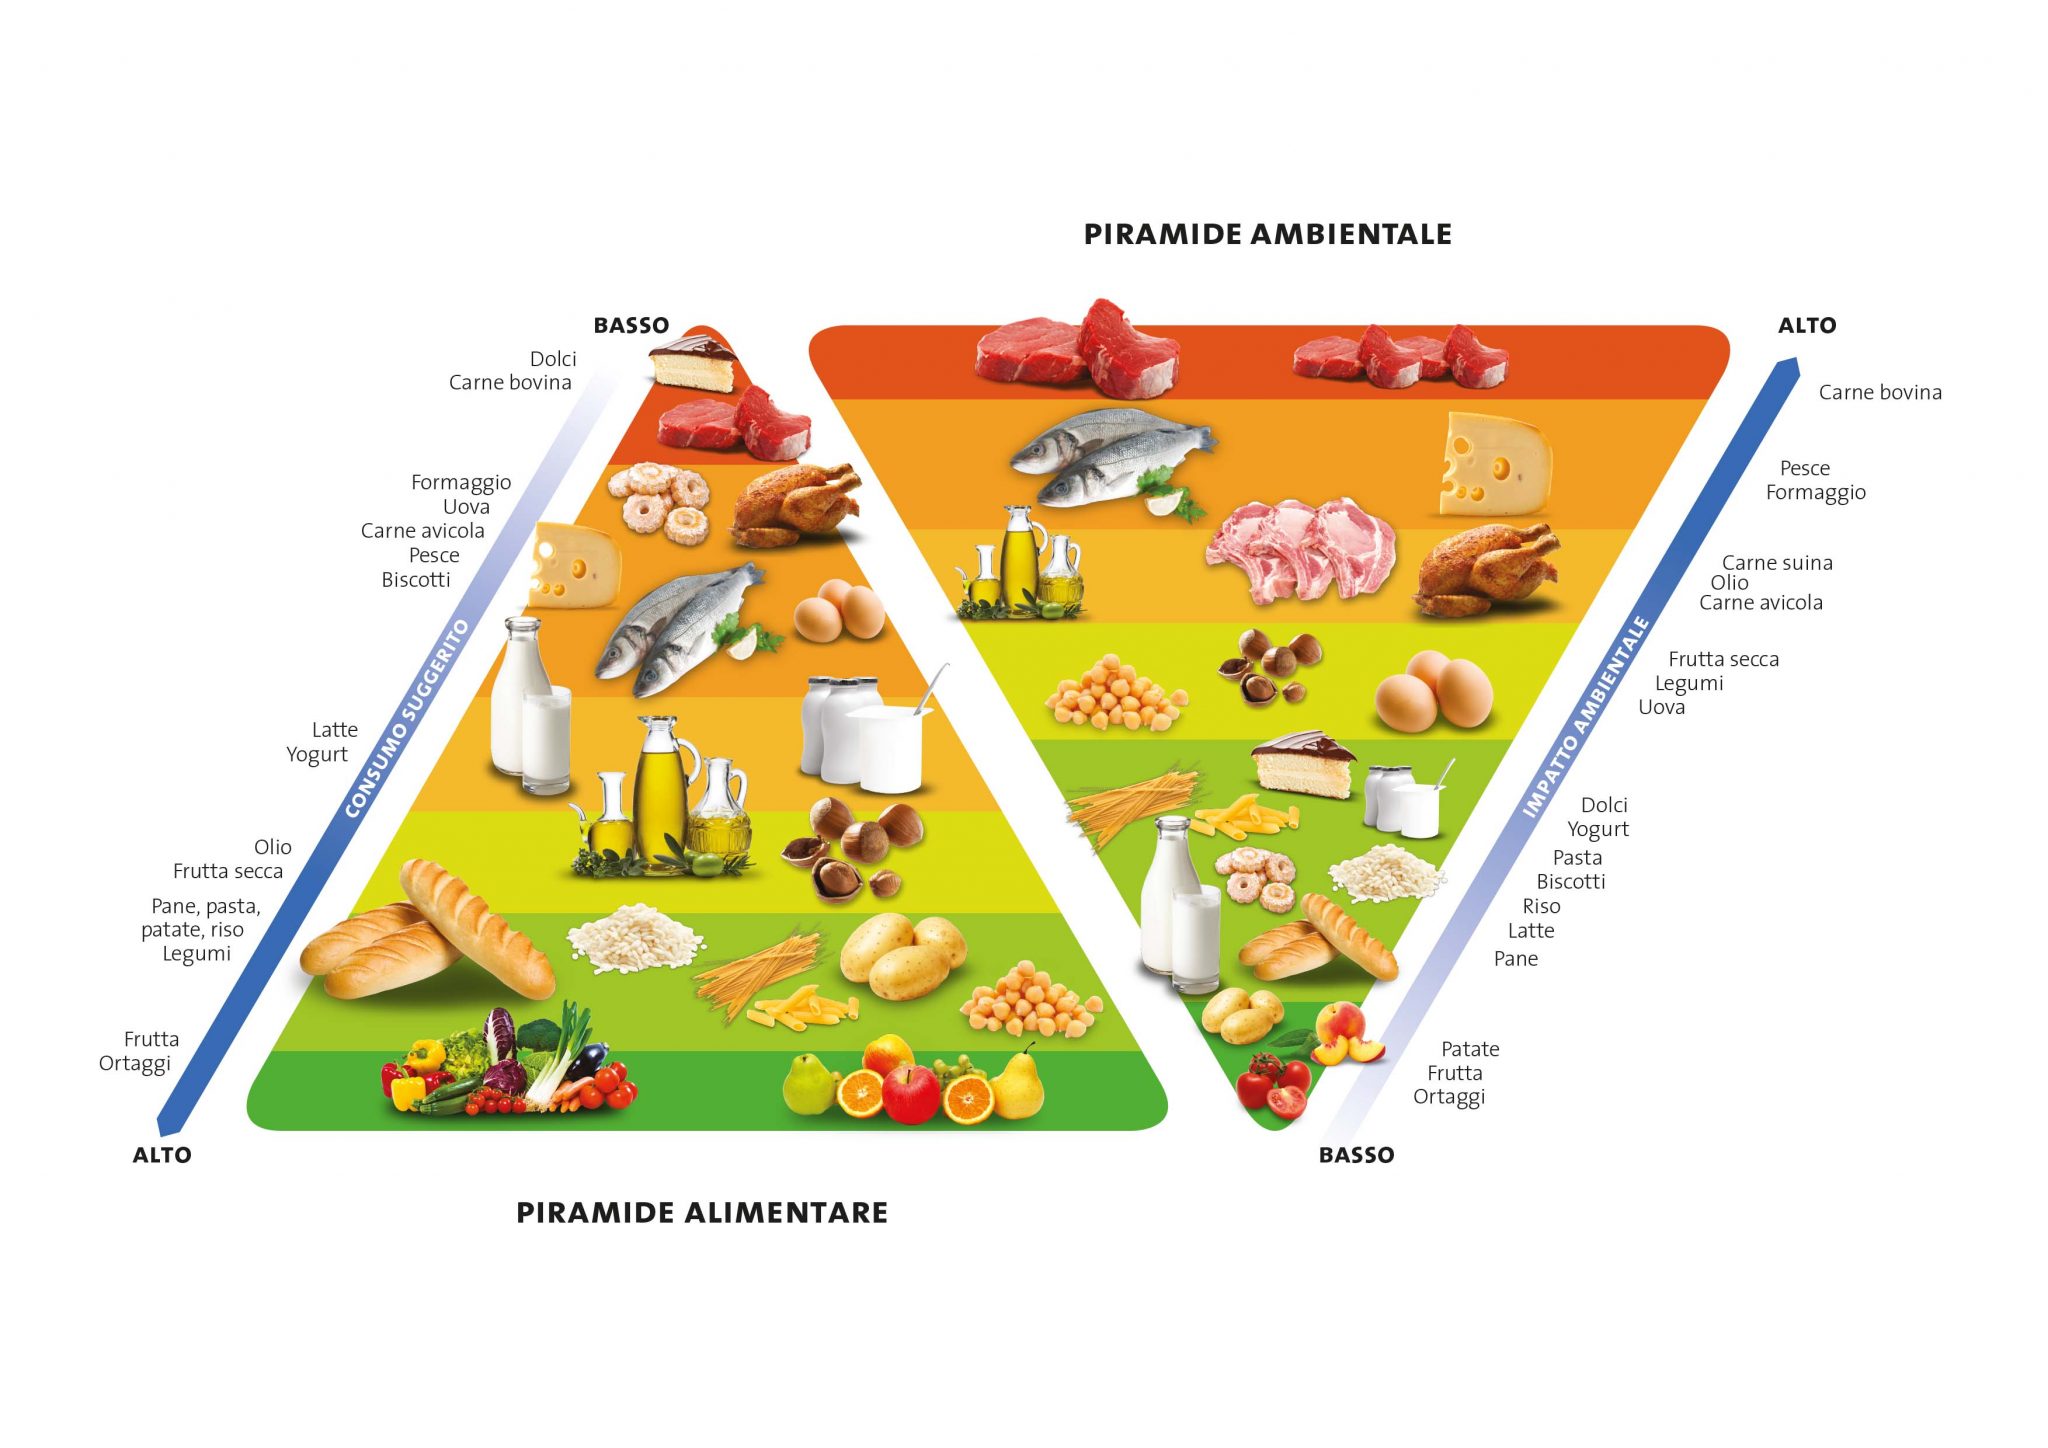 Il modello di Doppia Piramide alimentare e ambientale